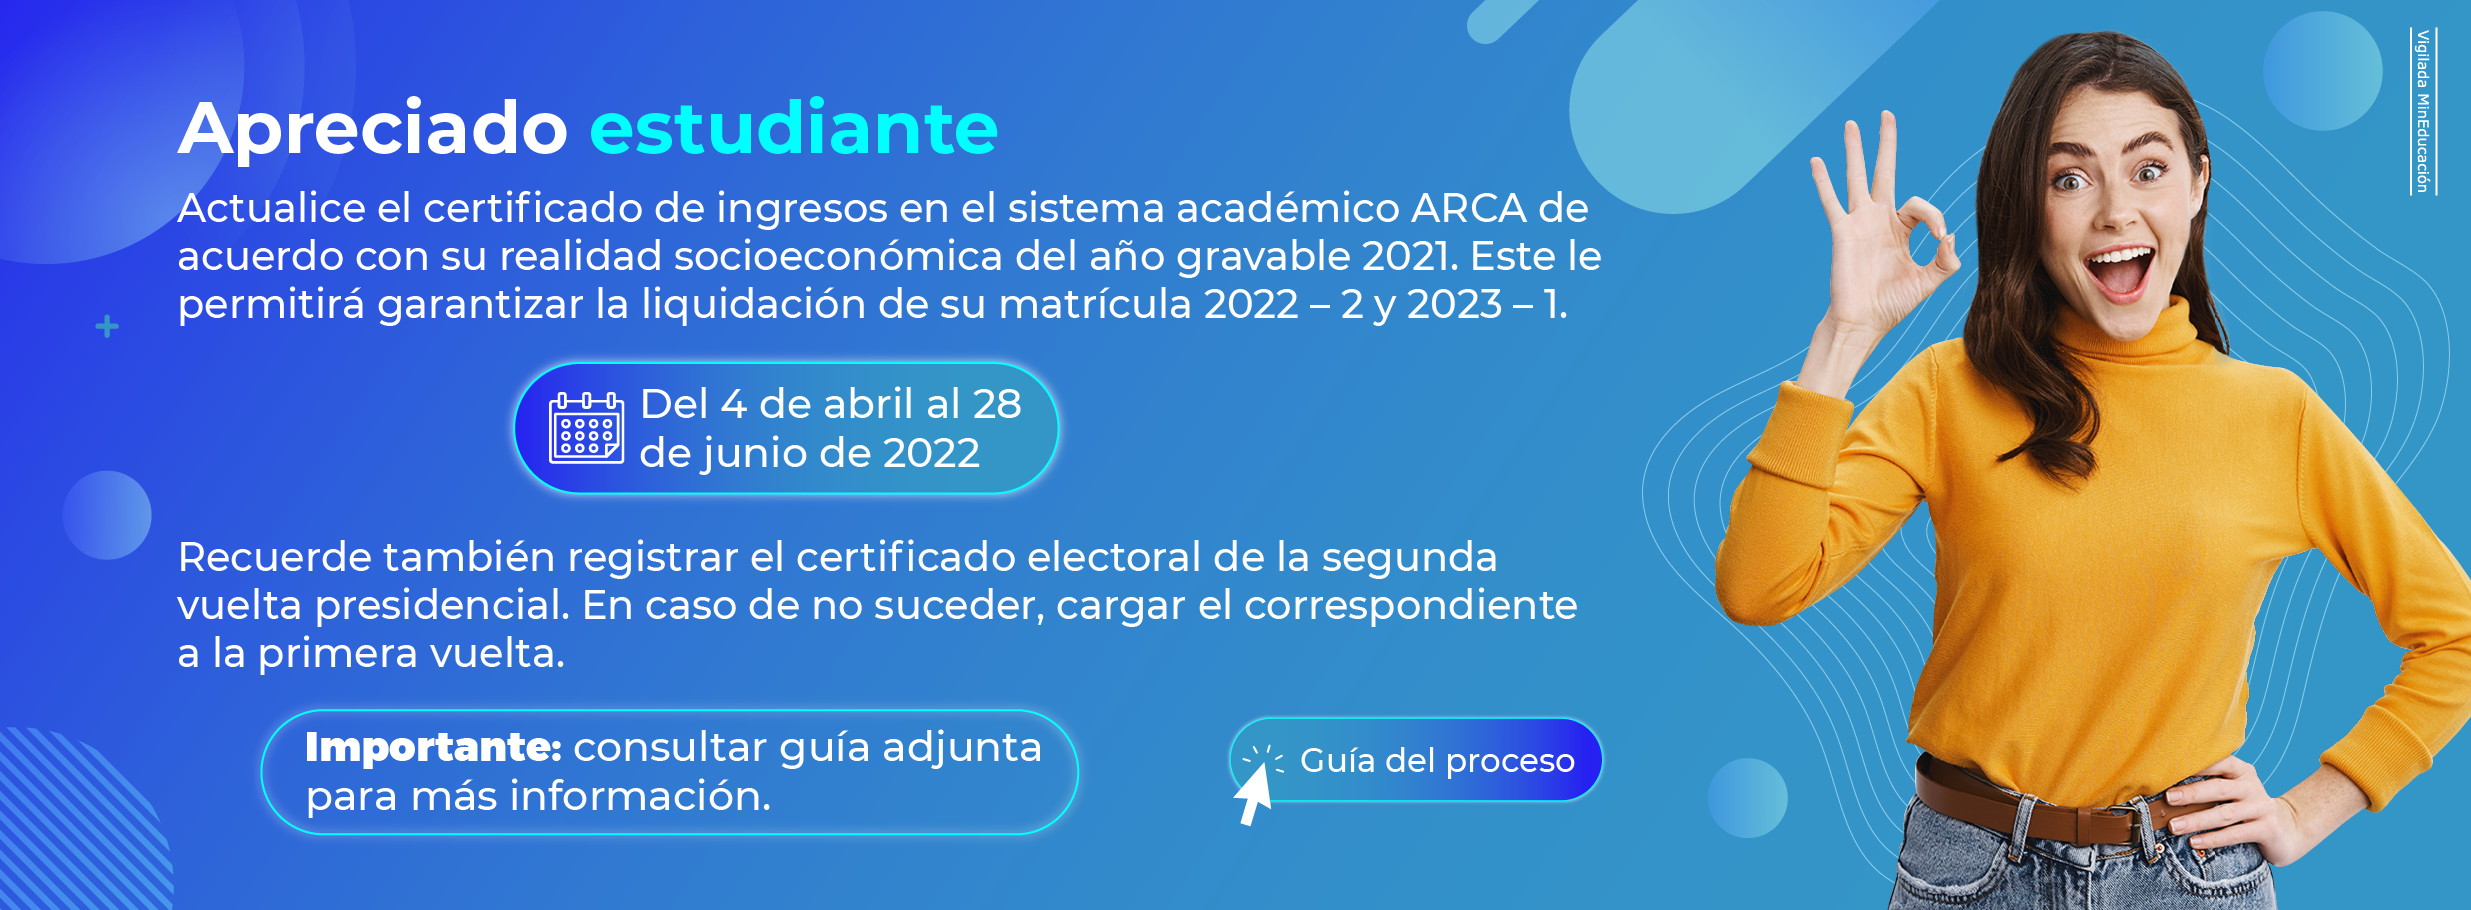 Certificado de ingresos y electoral 2022